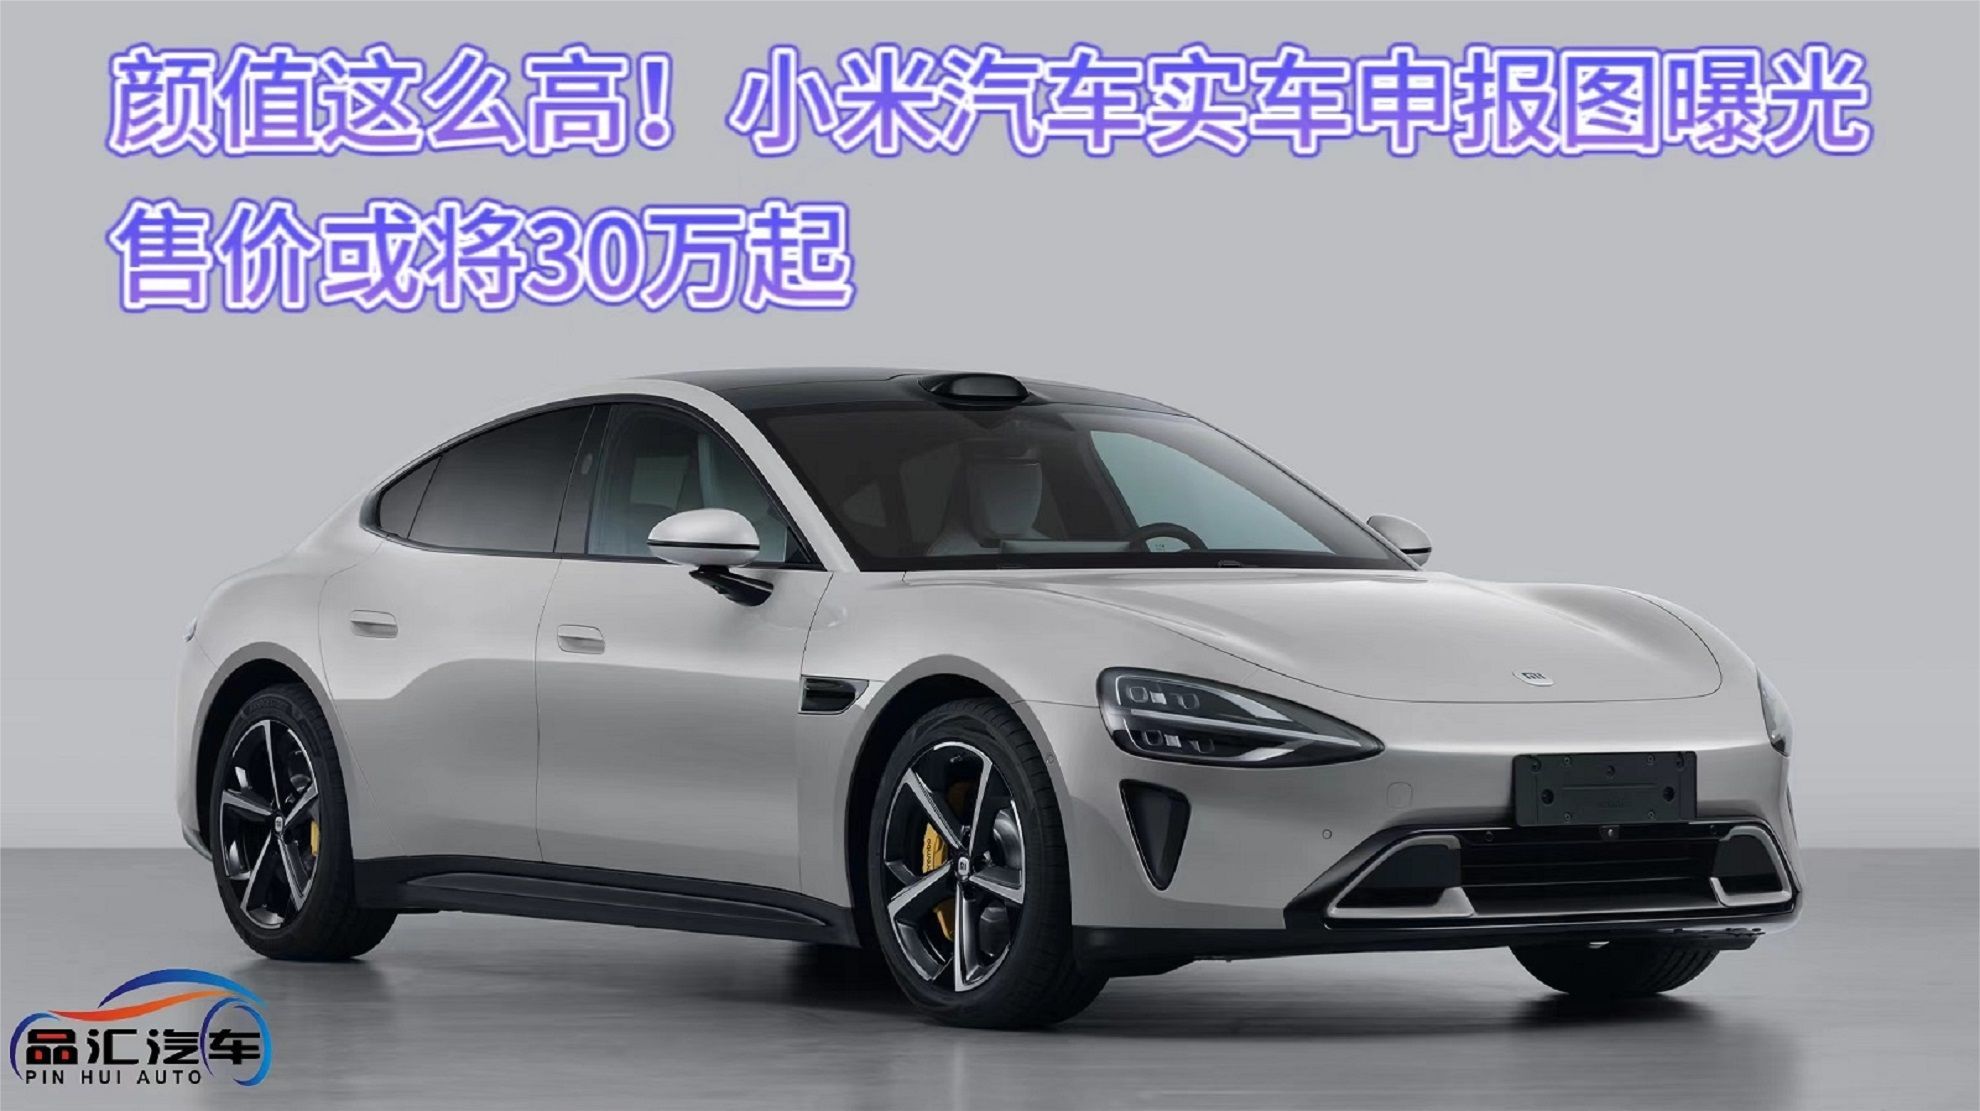 小米汽车首款车型SU7亮相：车长比肩特斯拉Model S 轴距达3米 - Xiaomi 小米 - cnBeta.COM